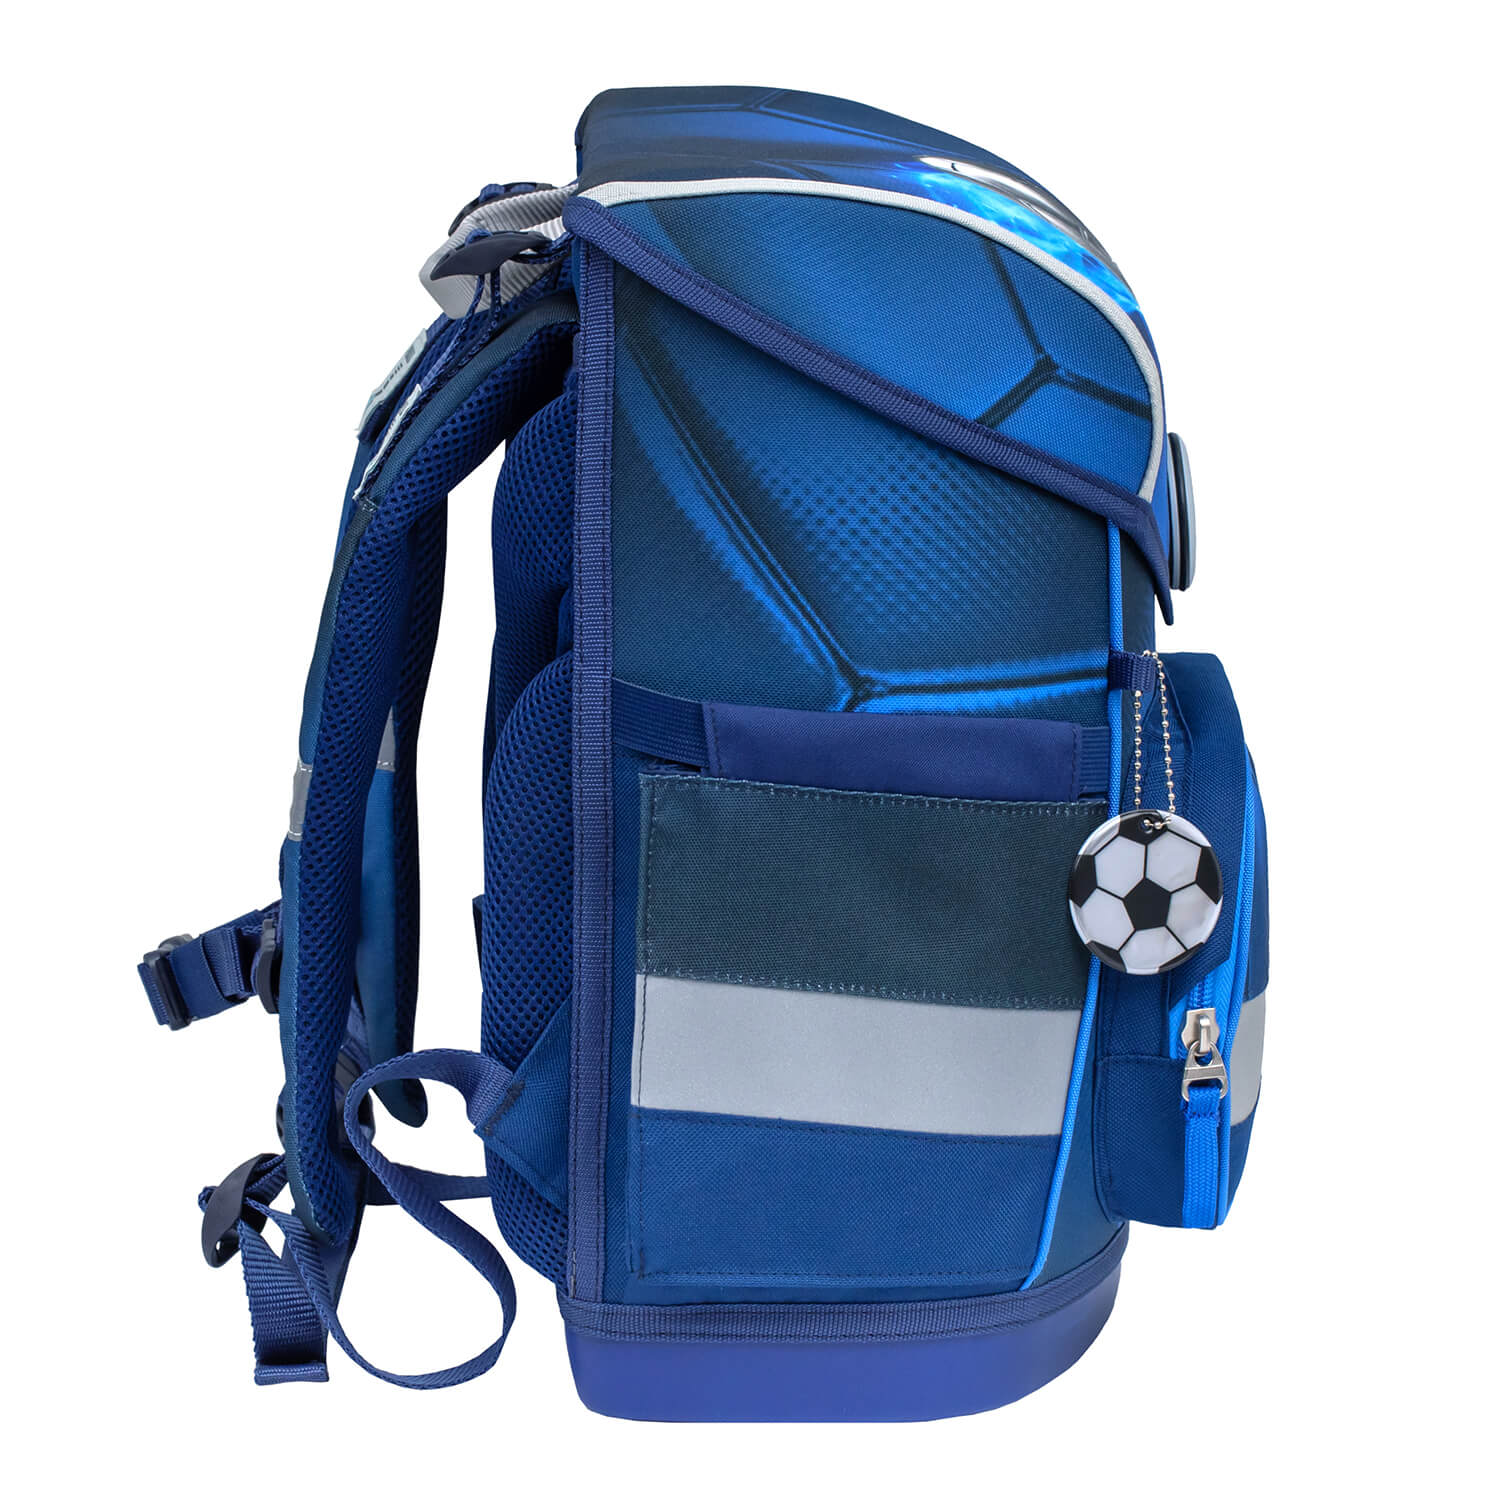 Compact Football 4 schoolbag set 4 pcs